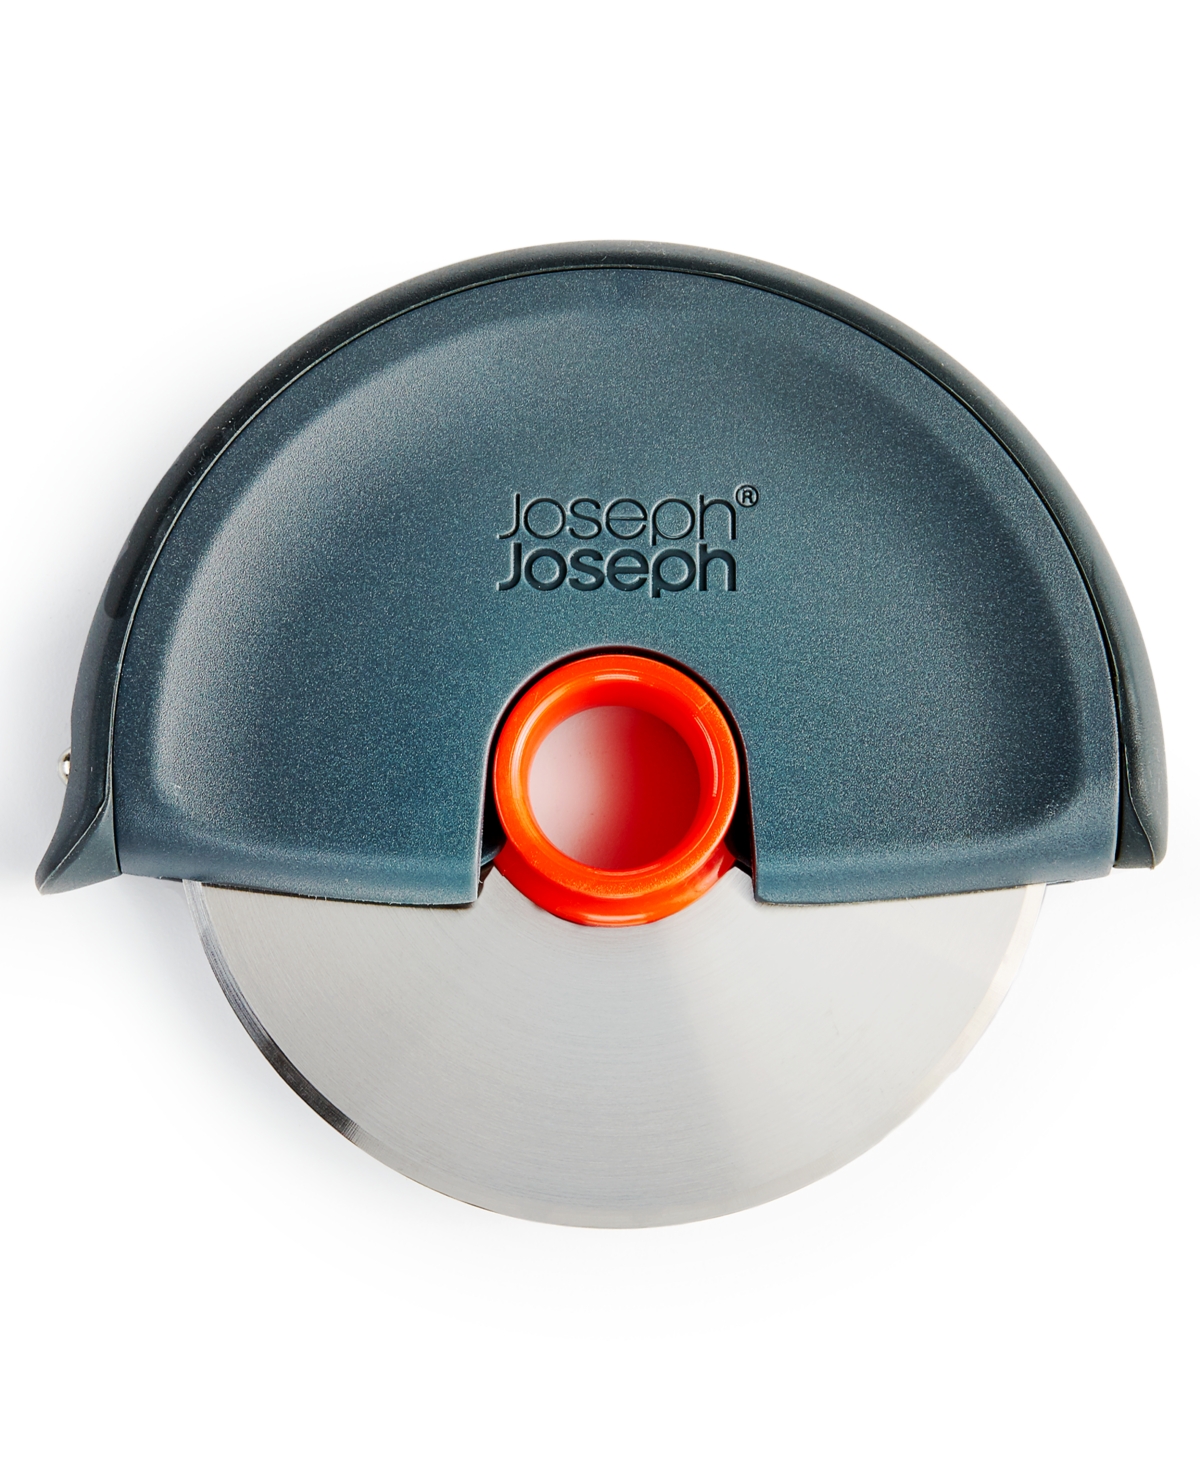 Joseph Joseph Disc Easy-clean Pizza Wheel In No Color